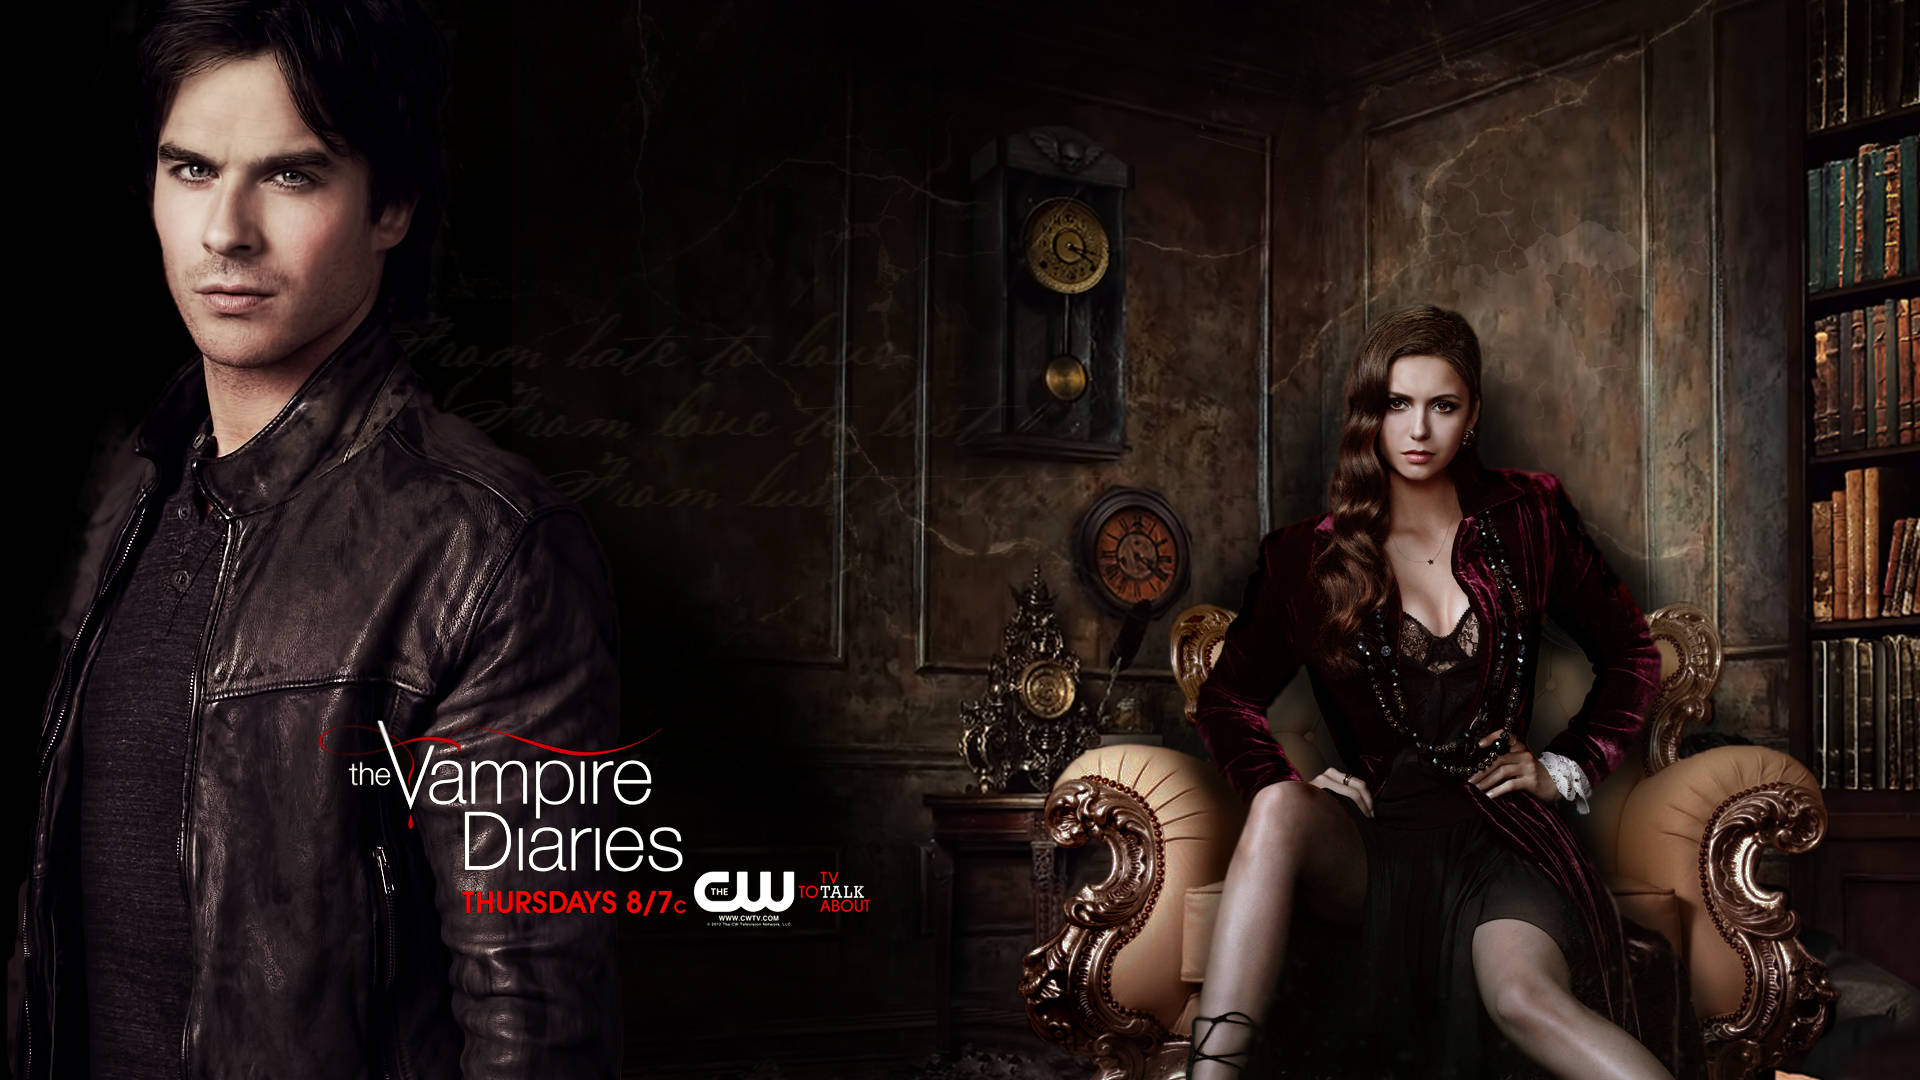 The Vampire Diaries Season 4 Poster Wallpaper